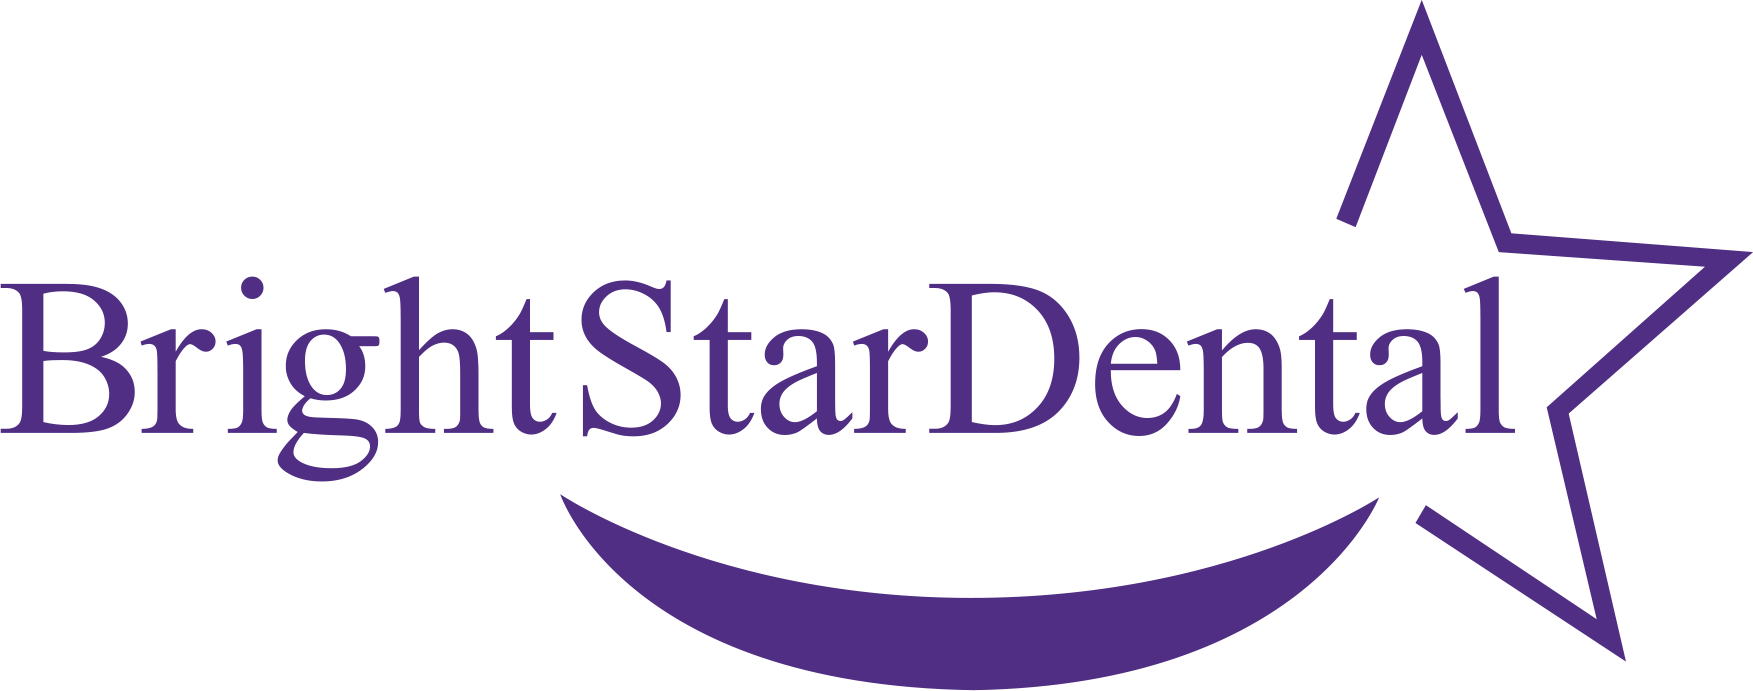 Bright star dental logo - Las Cruces, NM